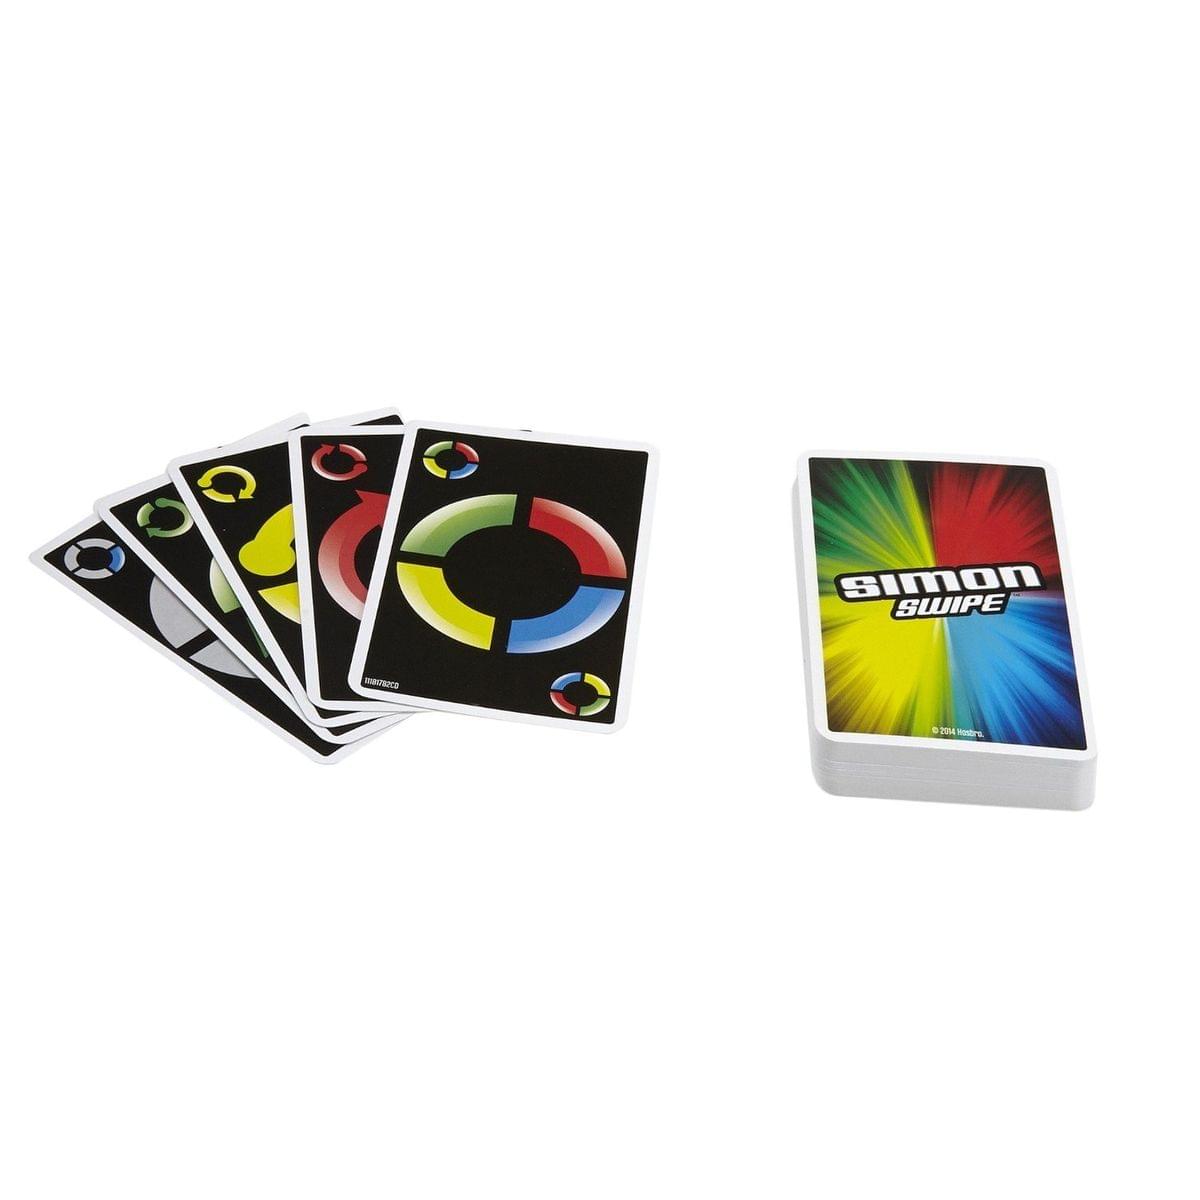 Simon Swipe Card Game